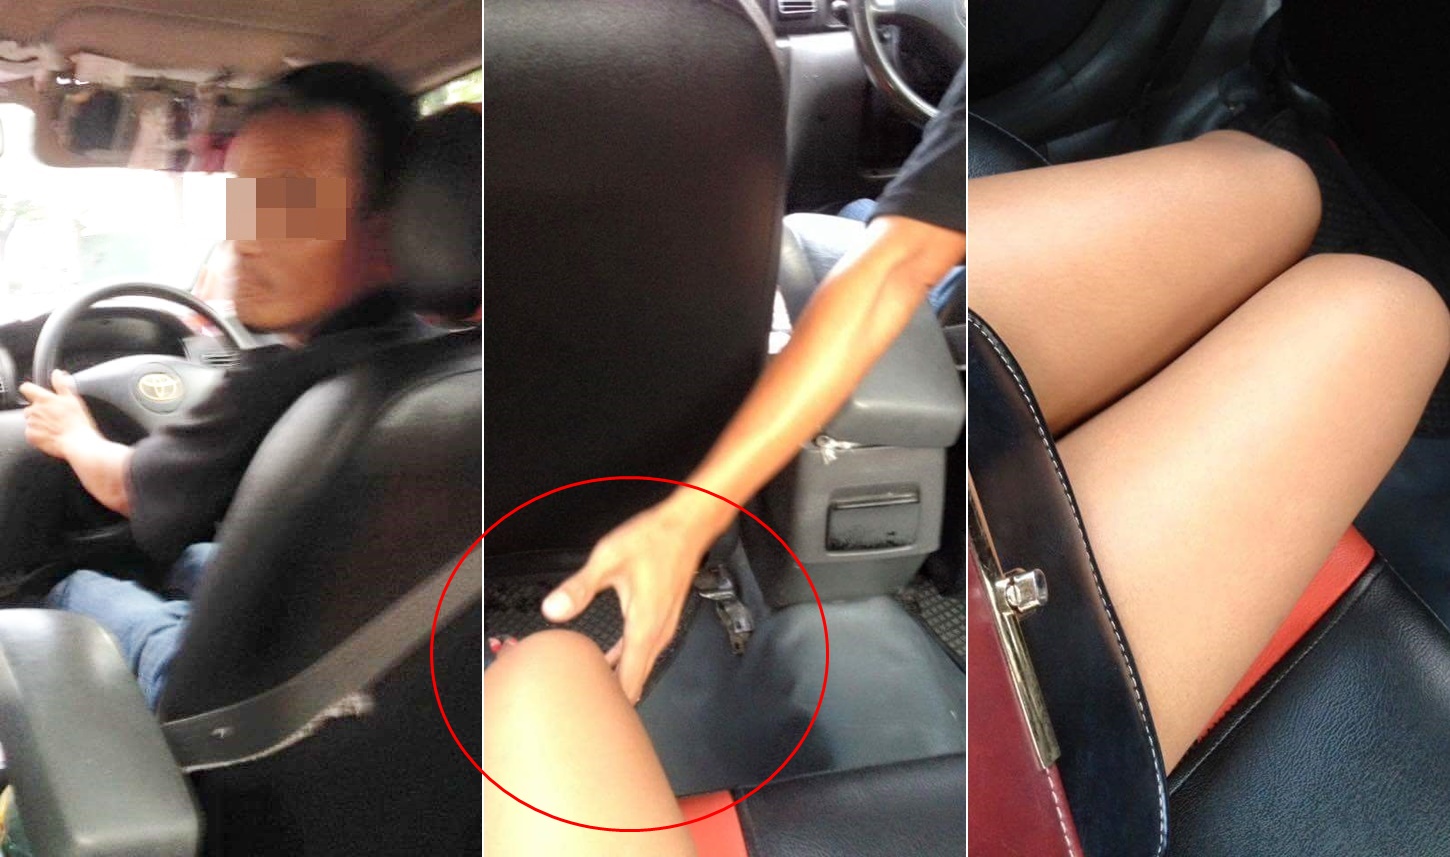 Порно таксистов и пассажирок 14 фото